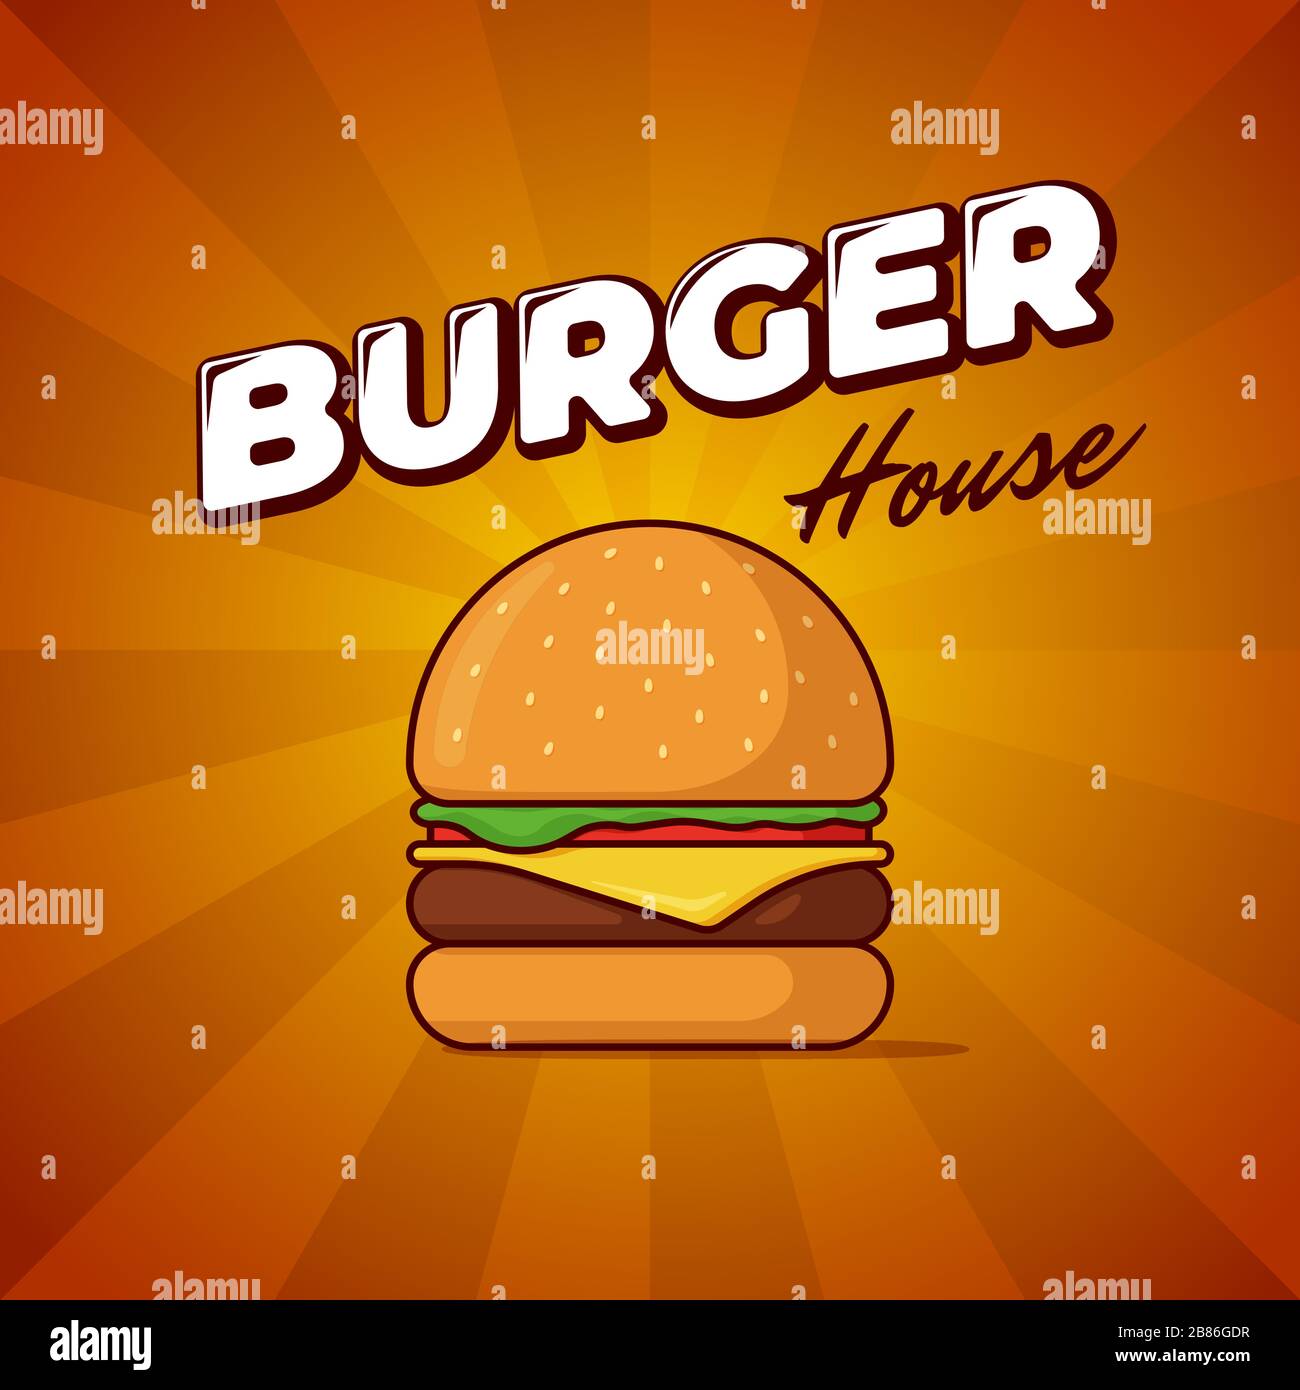 Burger House Fast-Food-Werbeplakat mit Strahlen und Schriftzug Inschrift. Köstliche Hamburger oder Cheeseburger Werbebanner Design Vorlage. Vektorgrafik für das Restaurant-Menü Stock Vektor